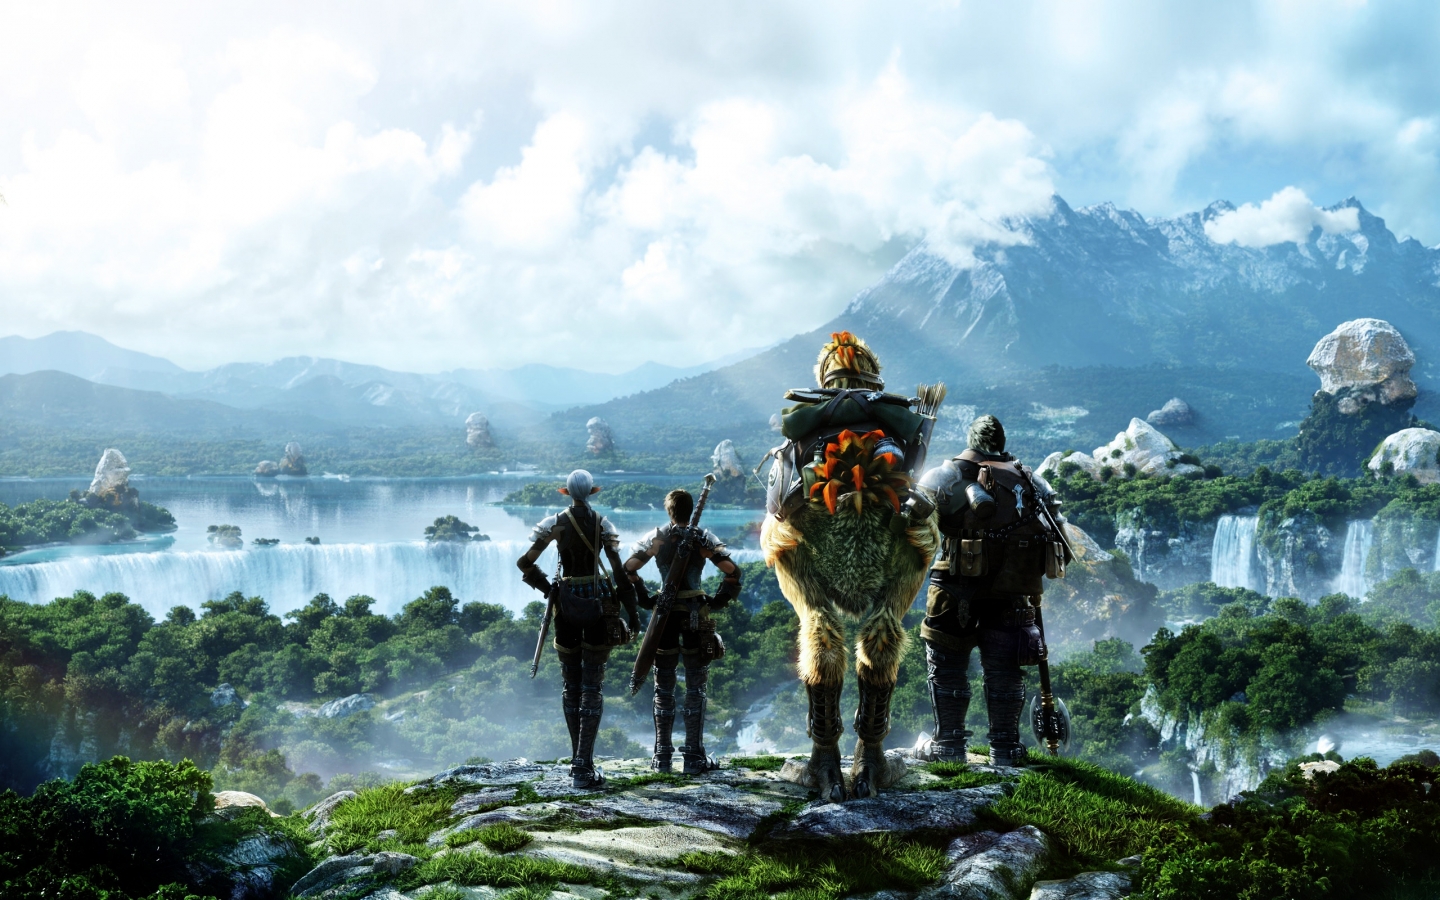 Final Fantasy Scene for 1440 x 900 widescreen resolution